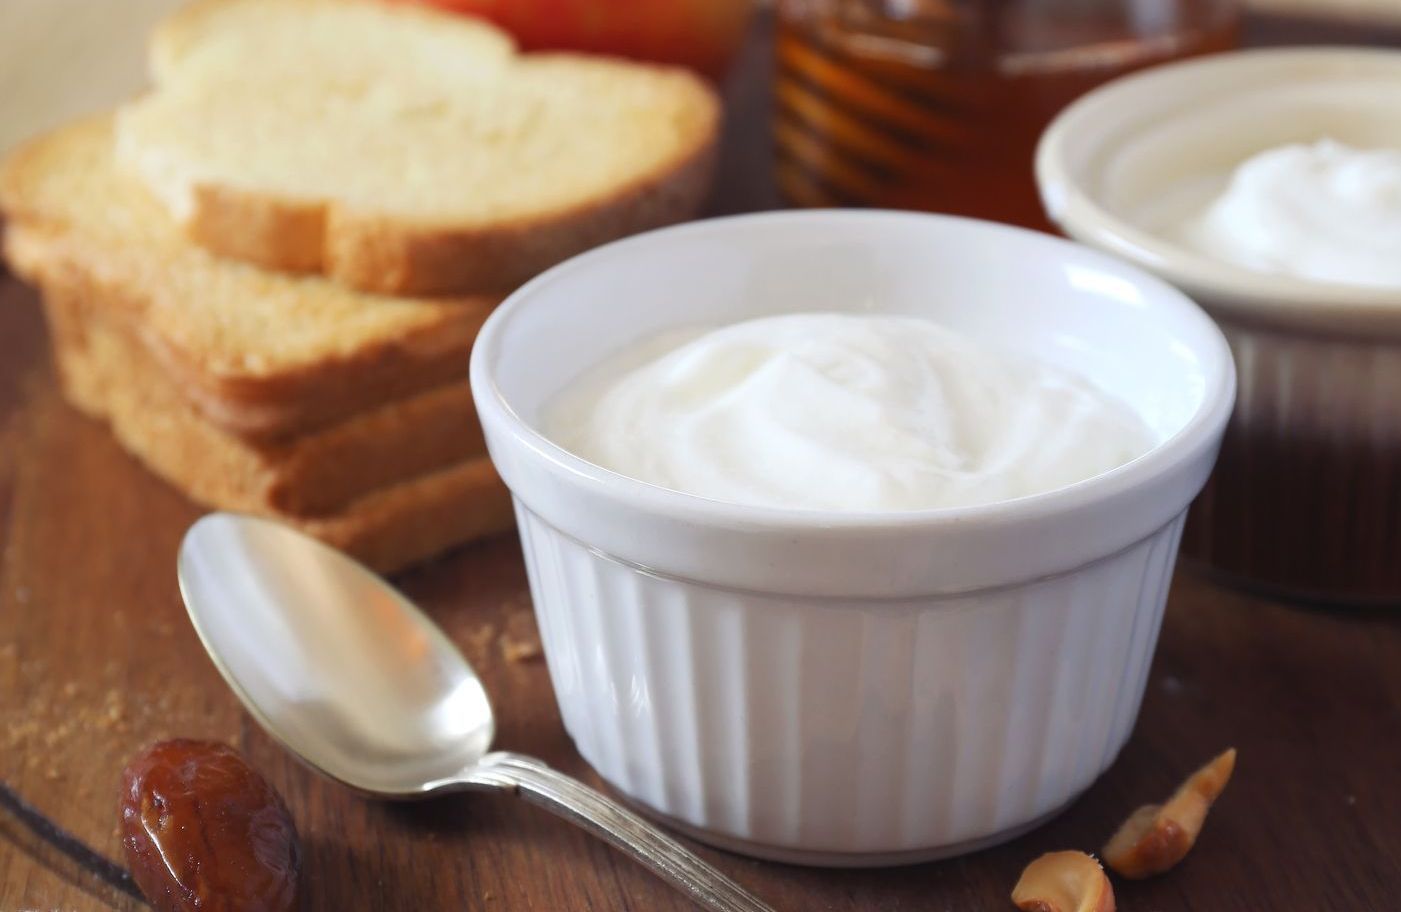 Skyr: The healthy yogurt trend questioned